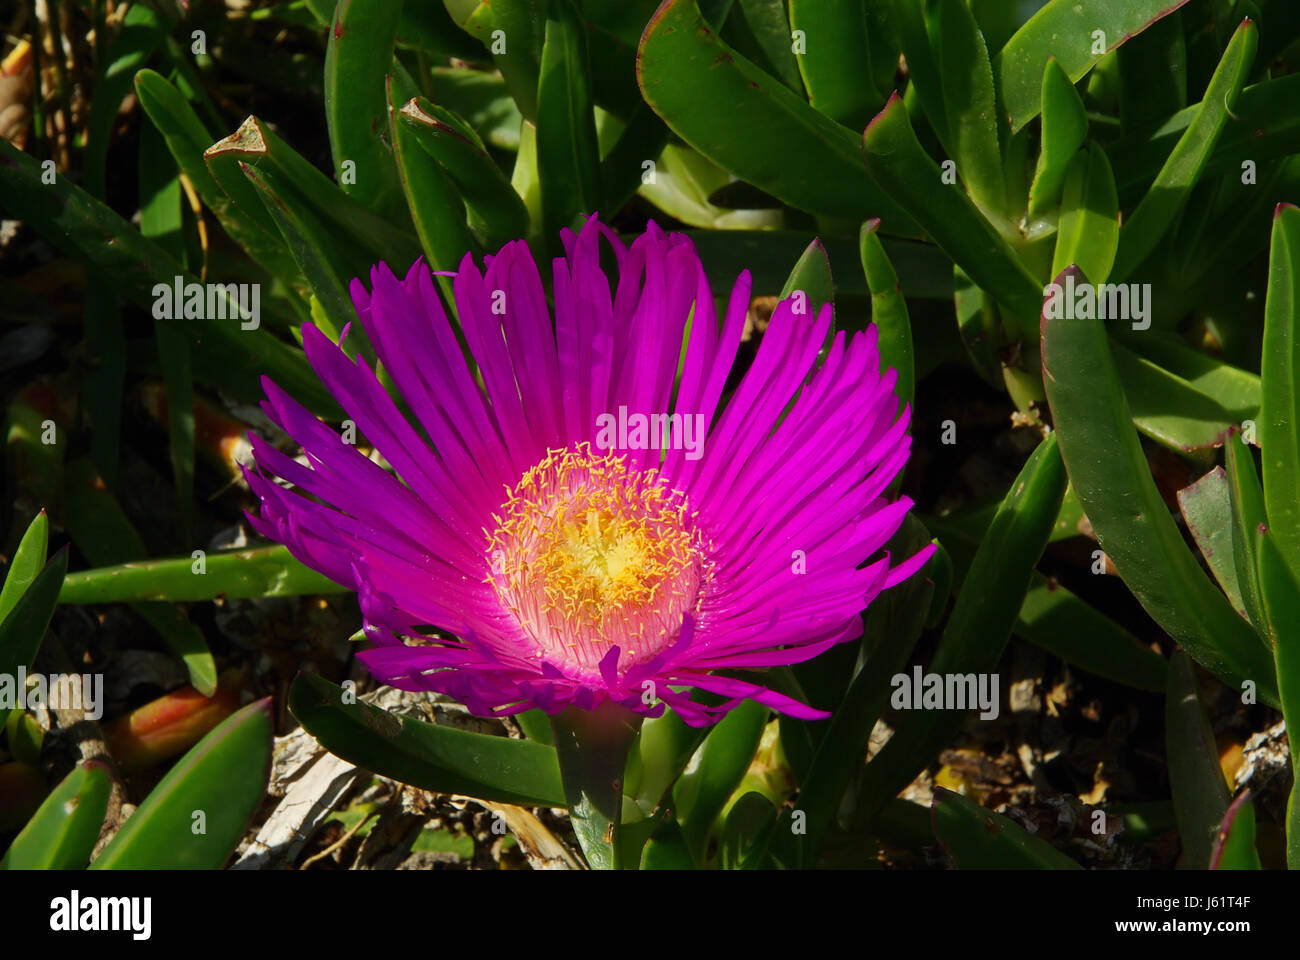 Blume Pflanze essbar Blume Pflanze Blüte Blüte gedeihen blühende Strand  Stockfotografie - Alamy